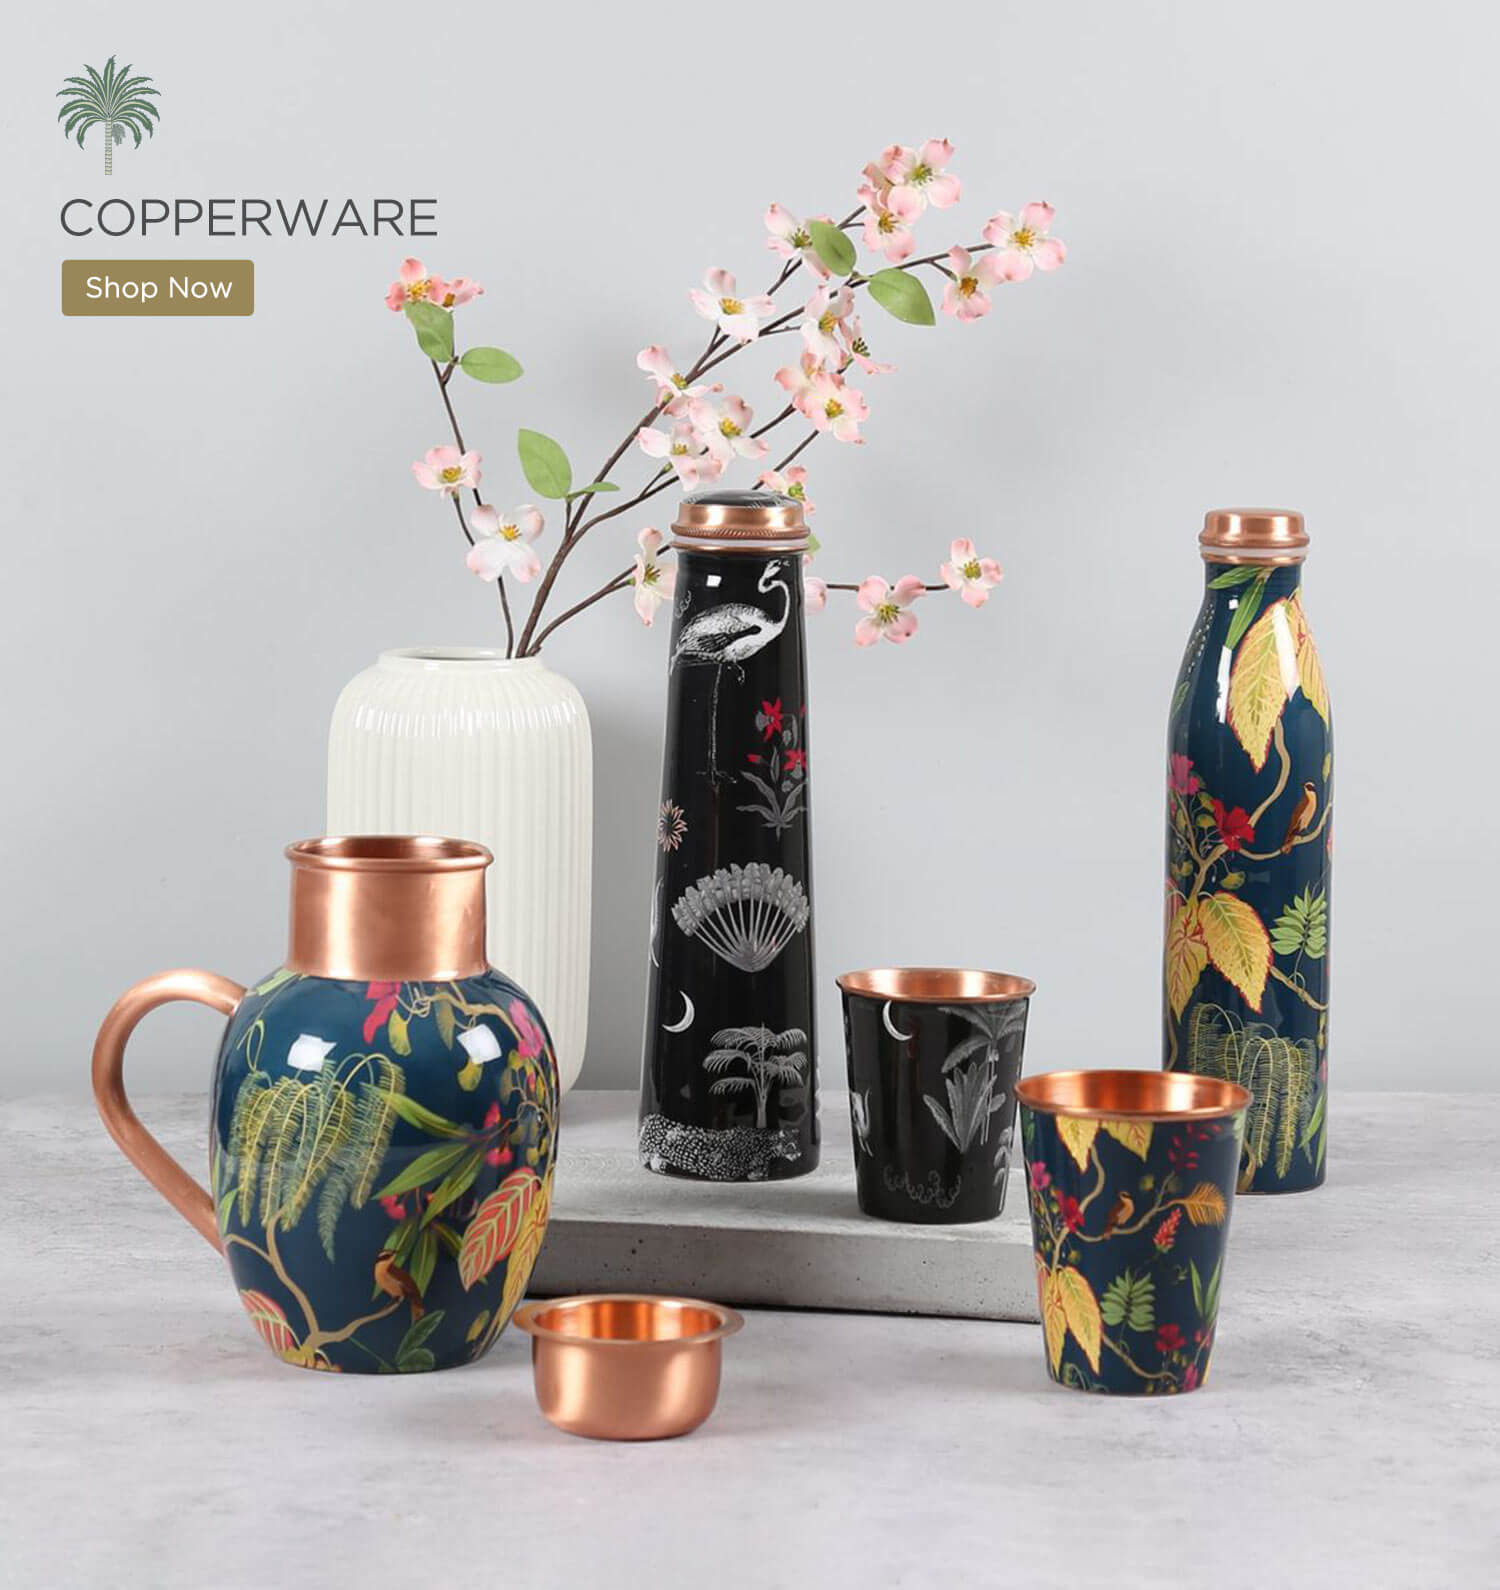 Buy Copperware Online